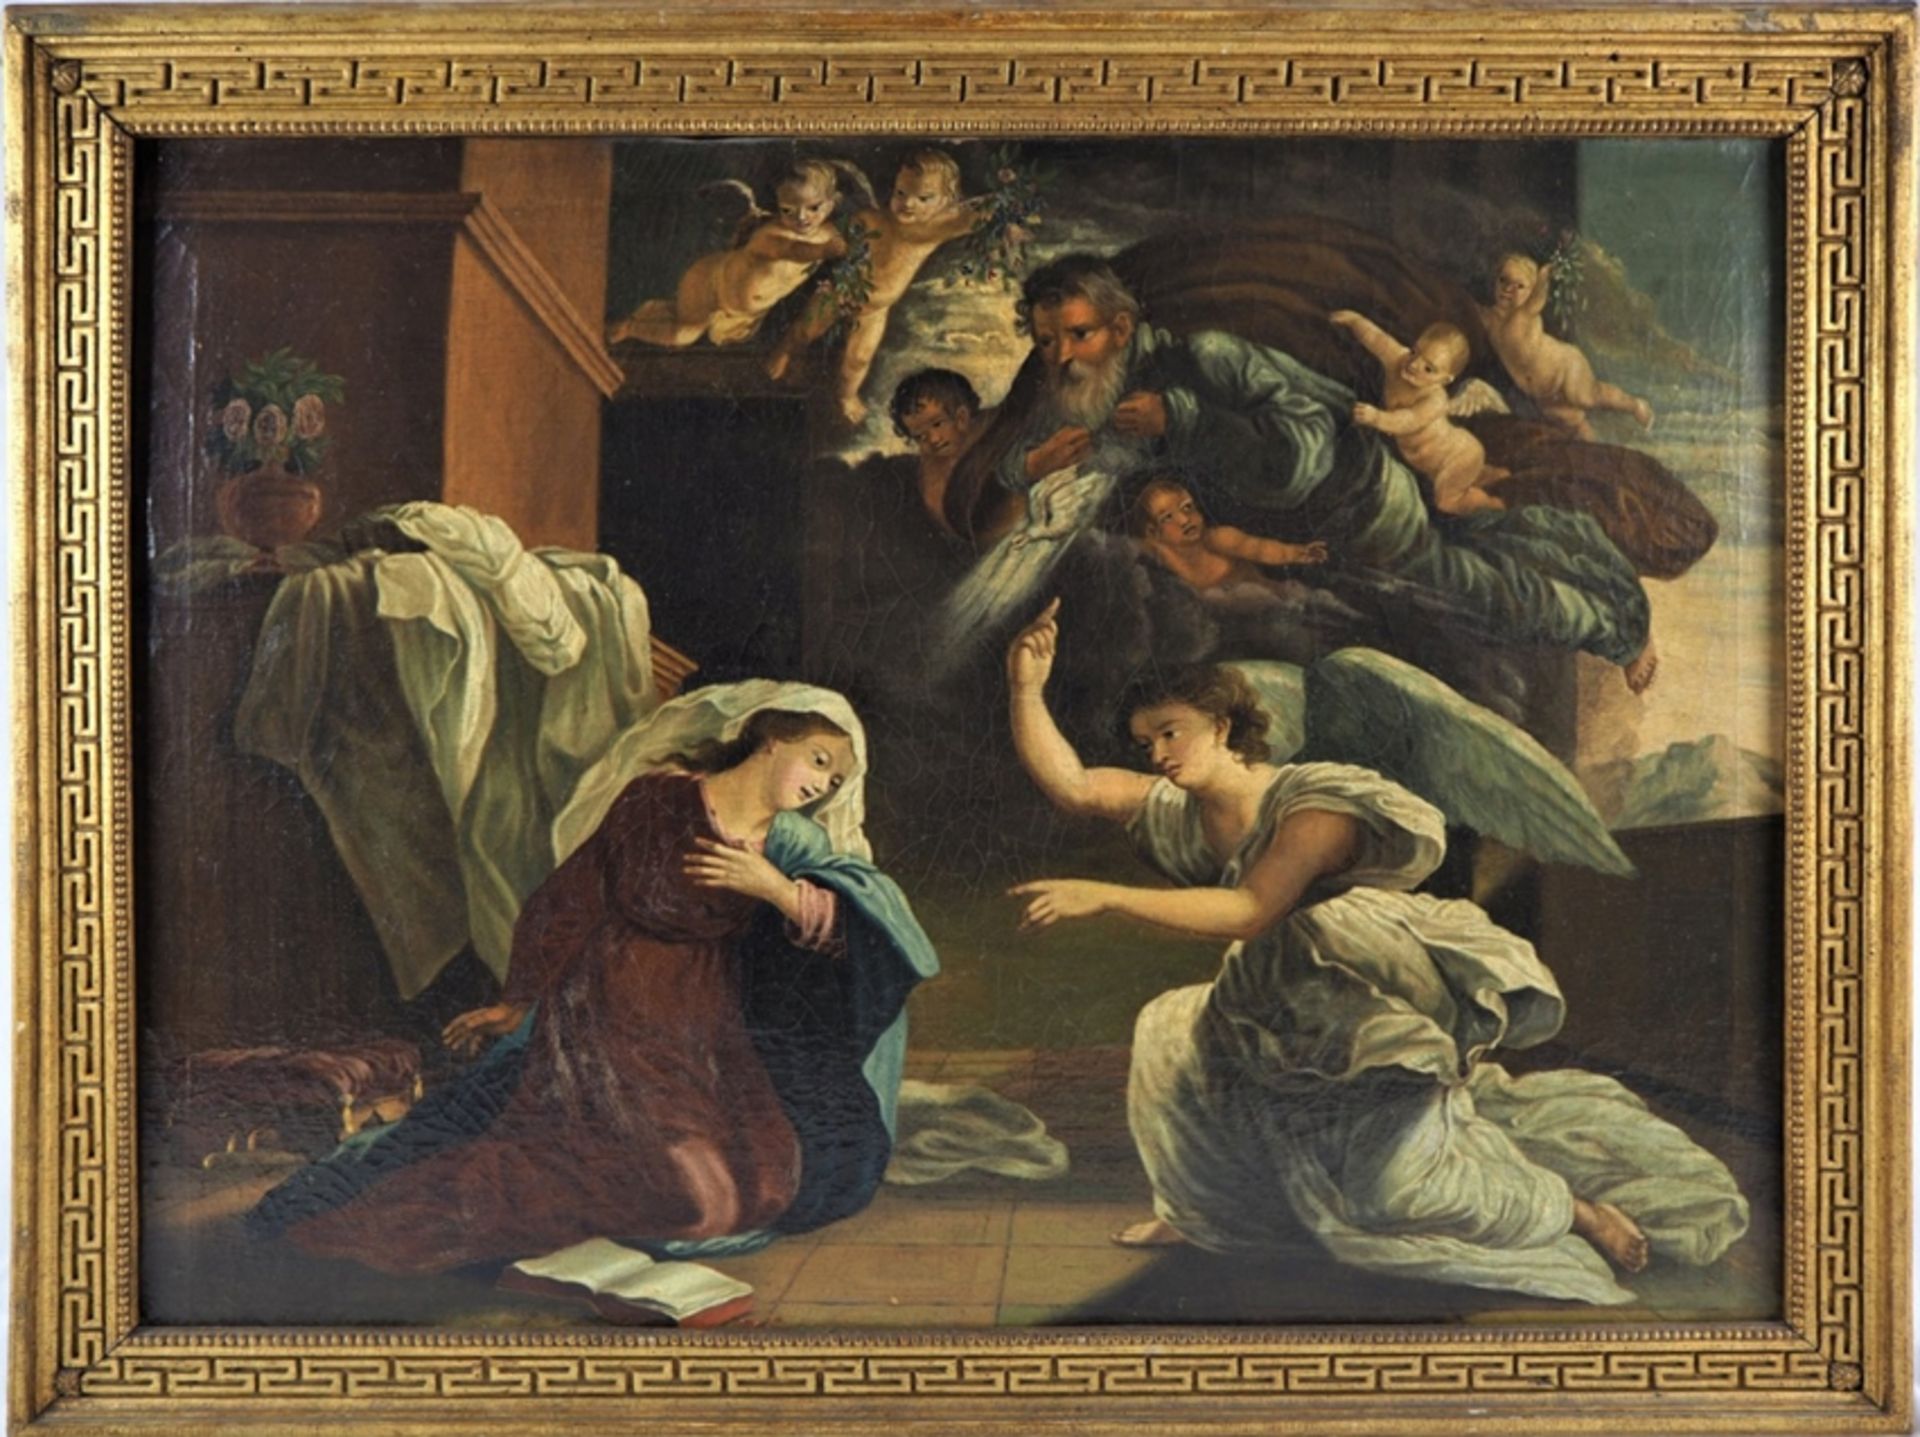 Johann Fraidel (1819, Ulm - 1849, Munich) - The Annunciation, 1836